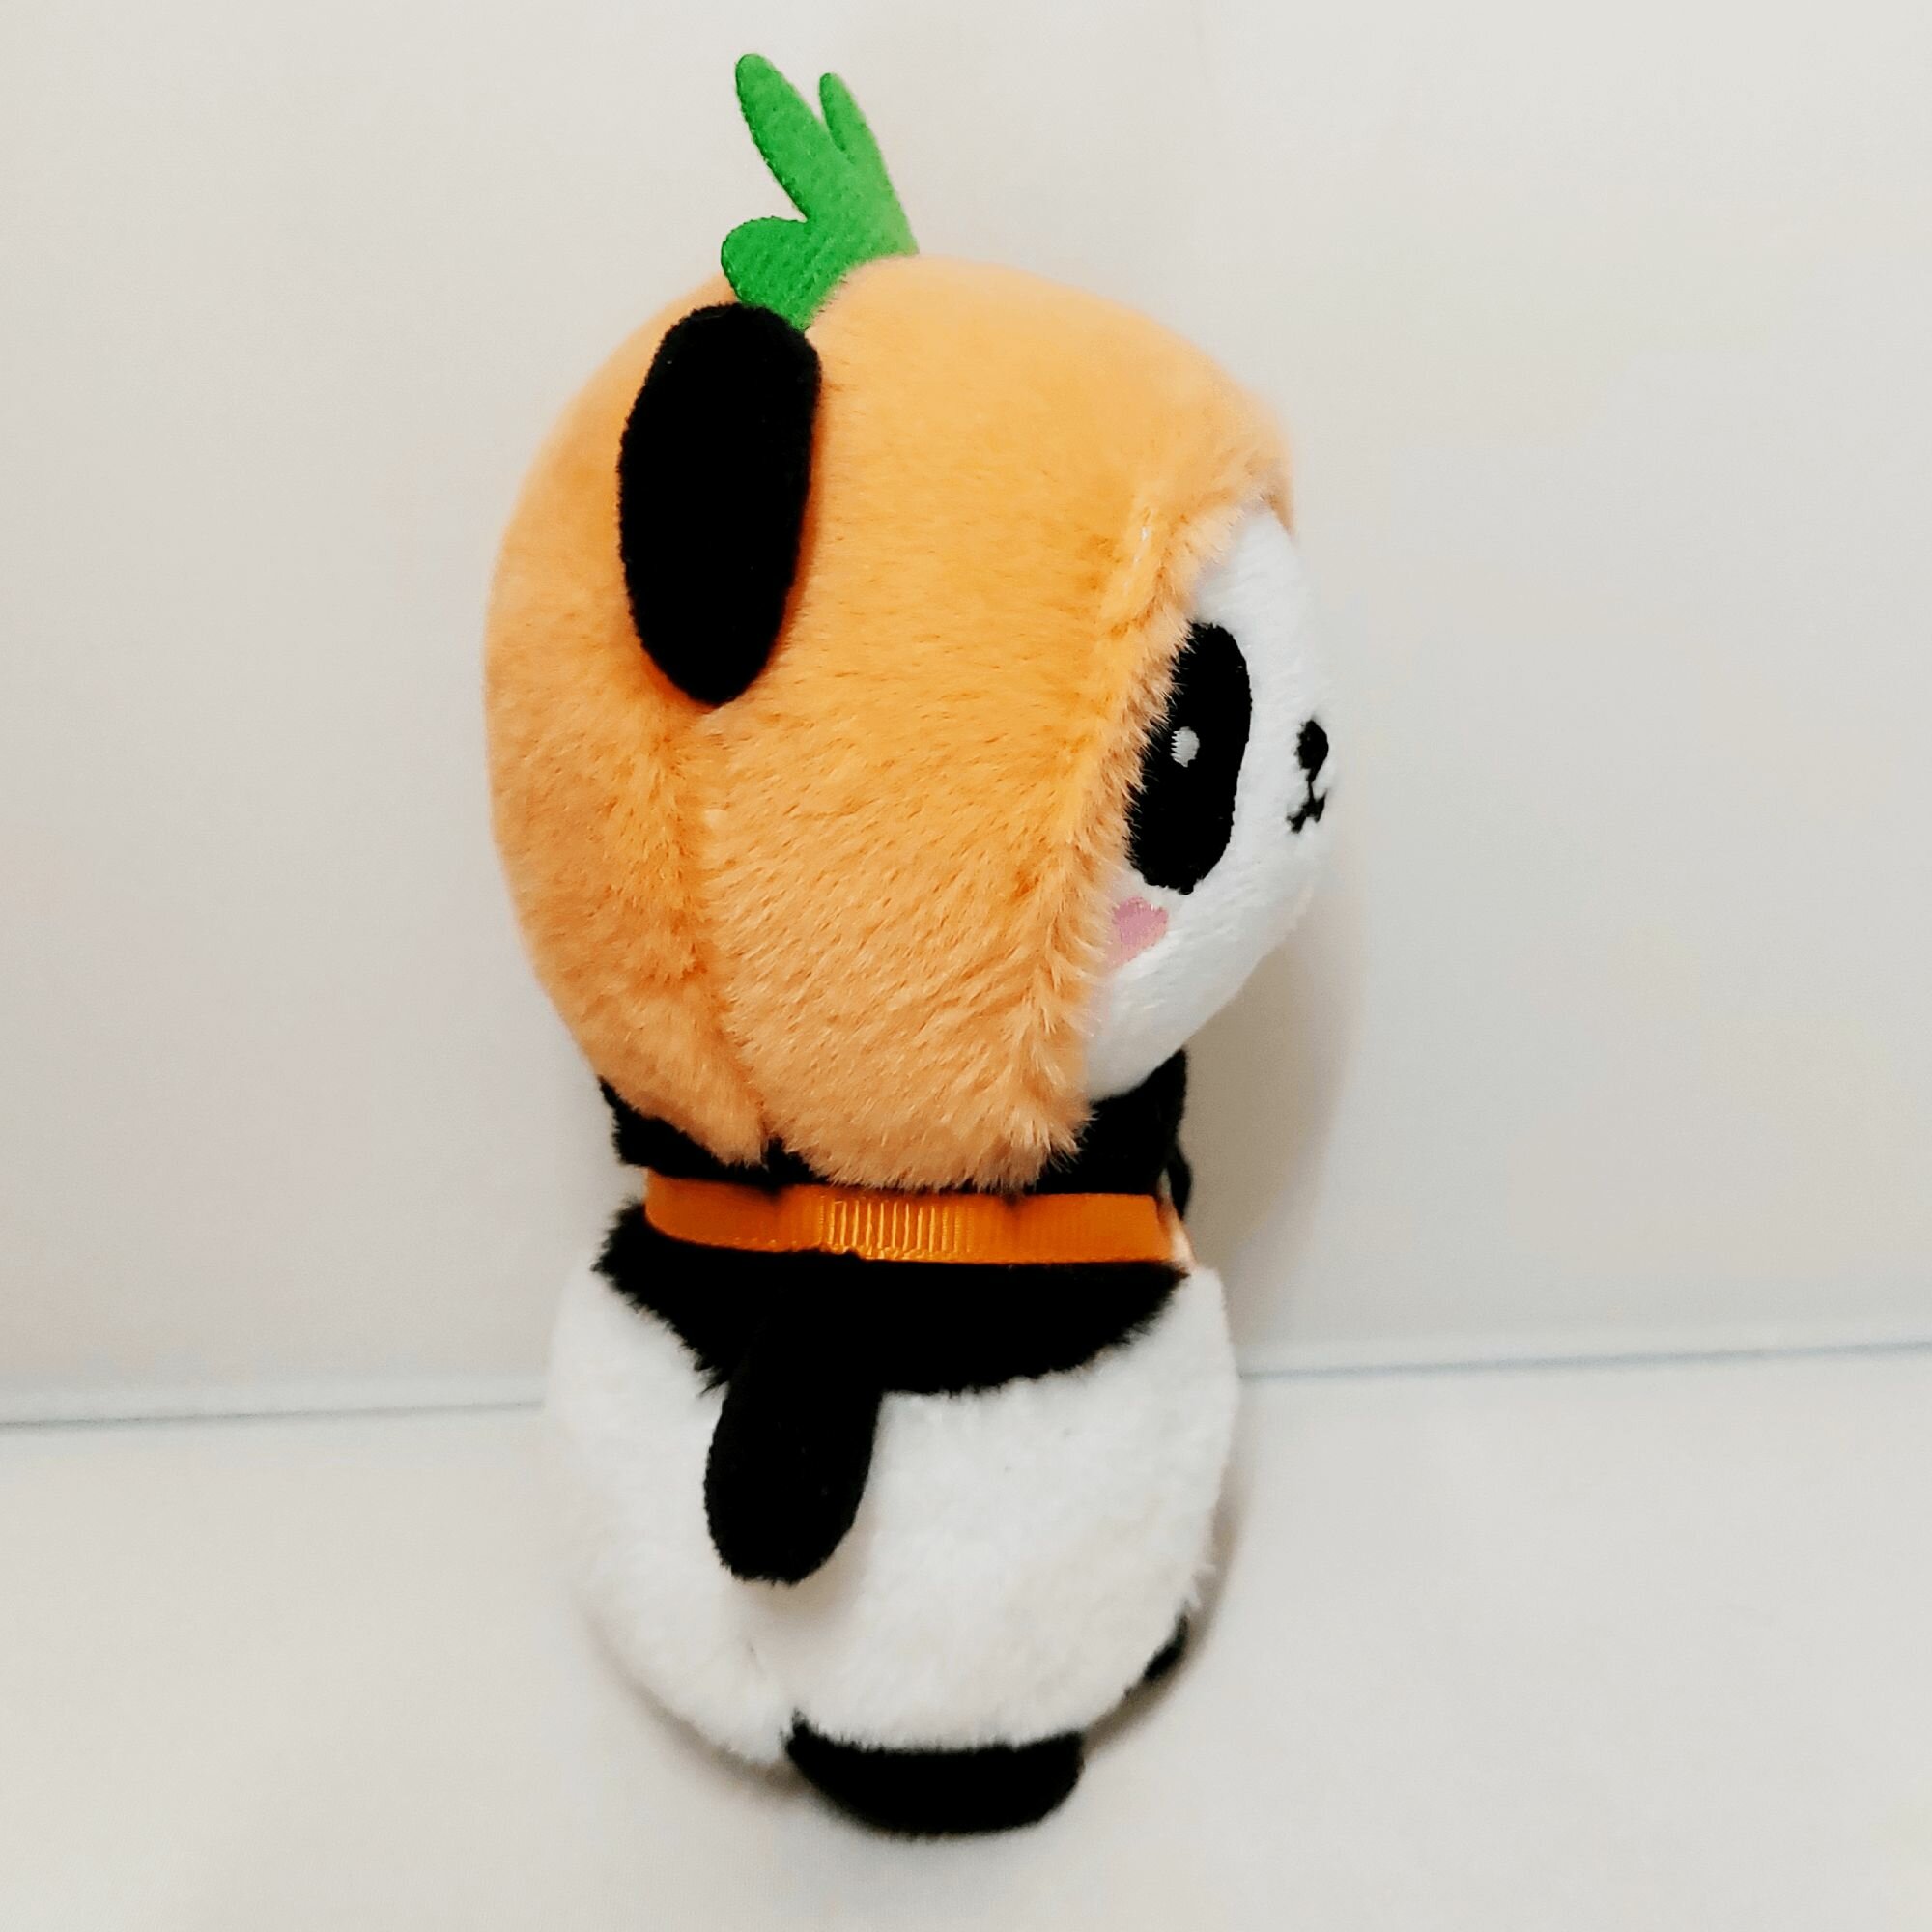 Мягкая игрушка панда плюшевый брелок 14 см